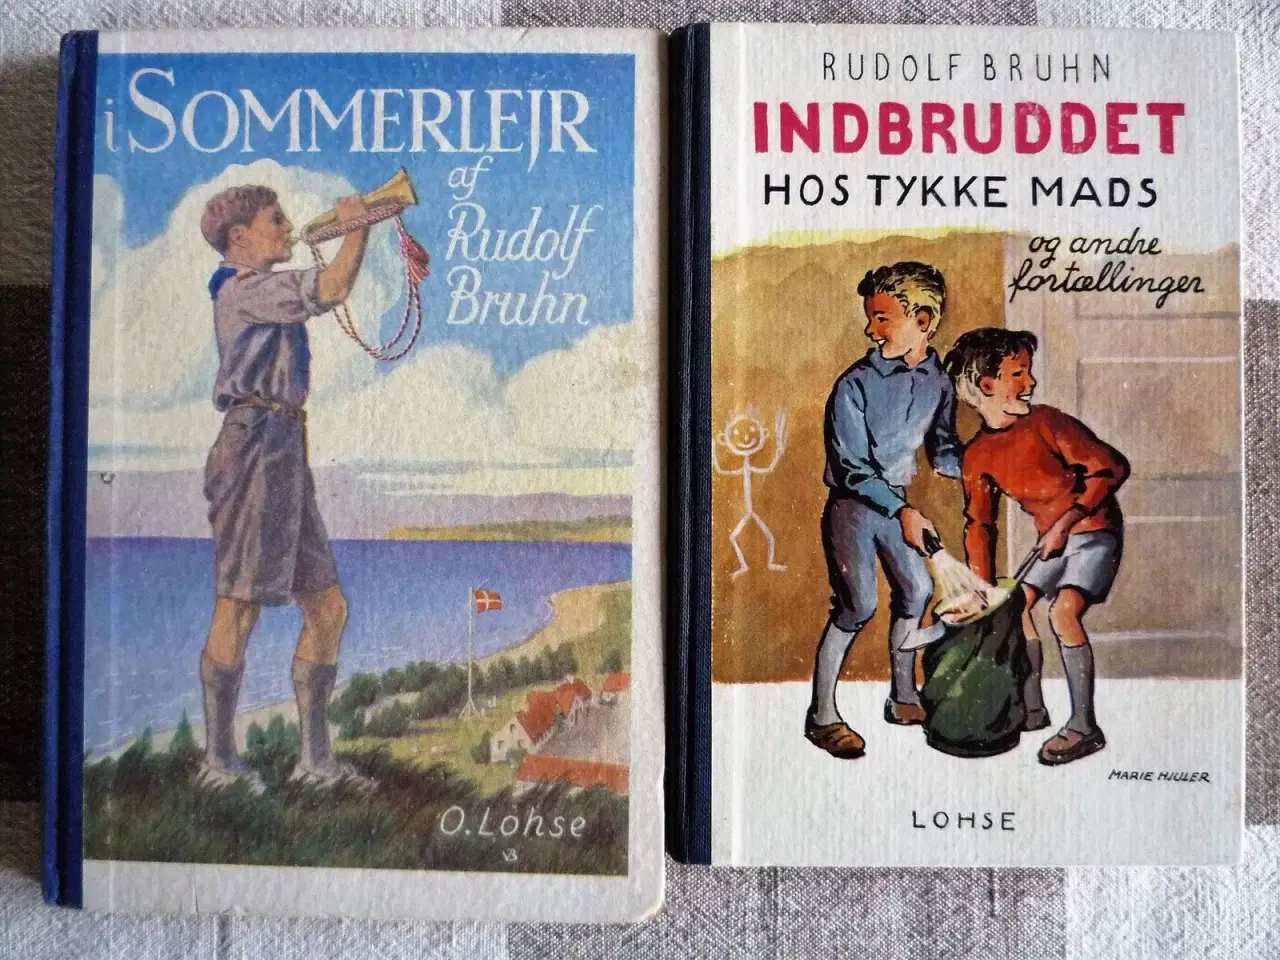 Billede 1 - To fine gamle børnebøger, ungdomsbøger